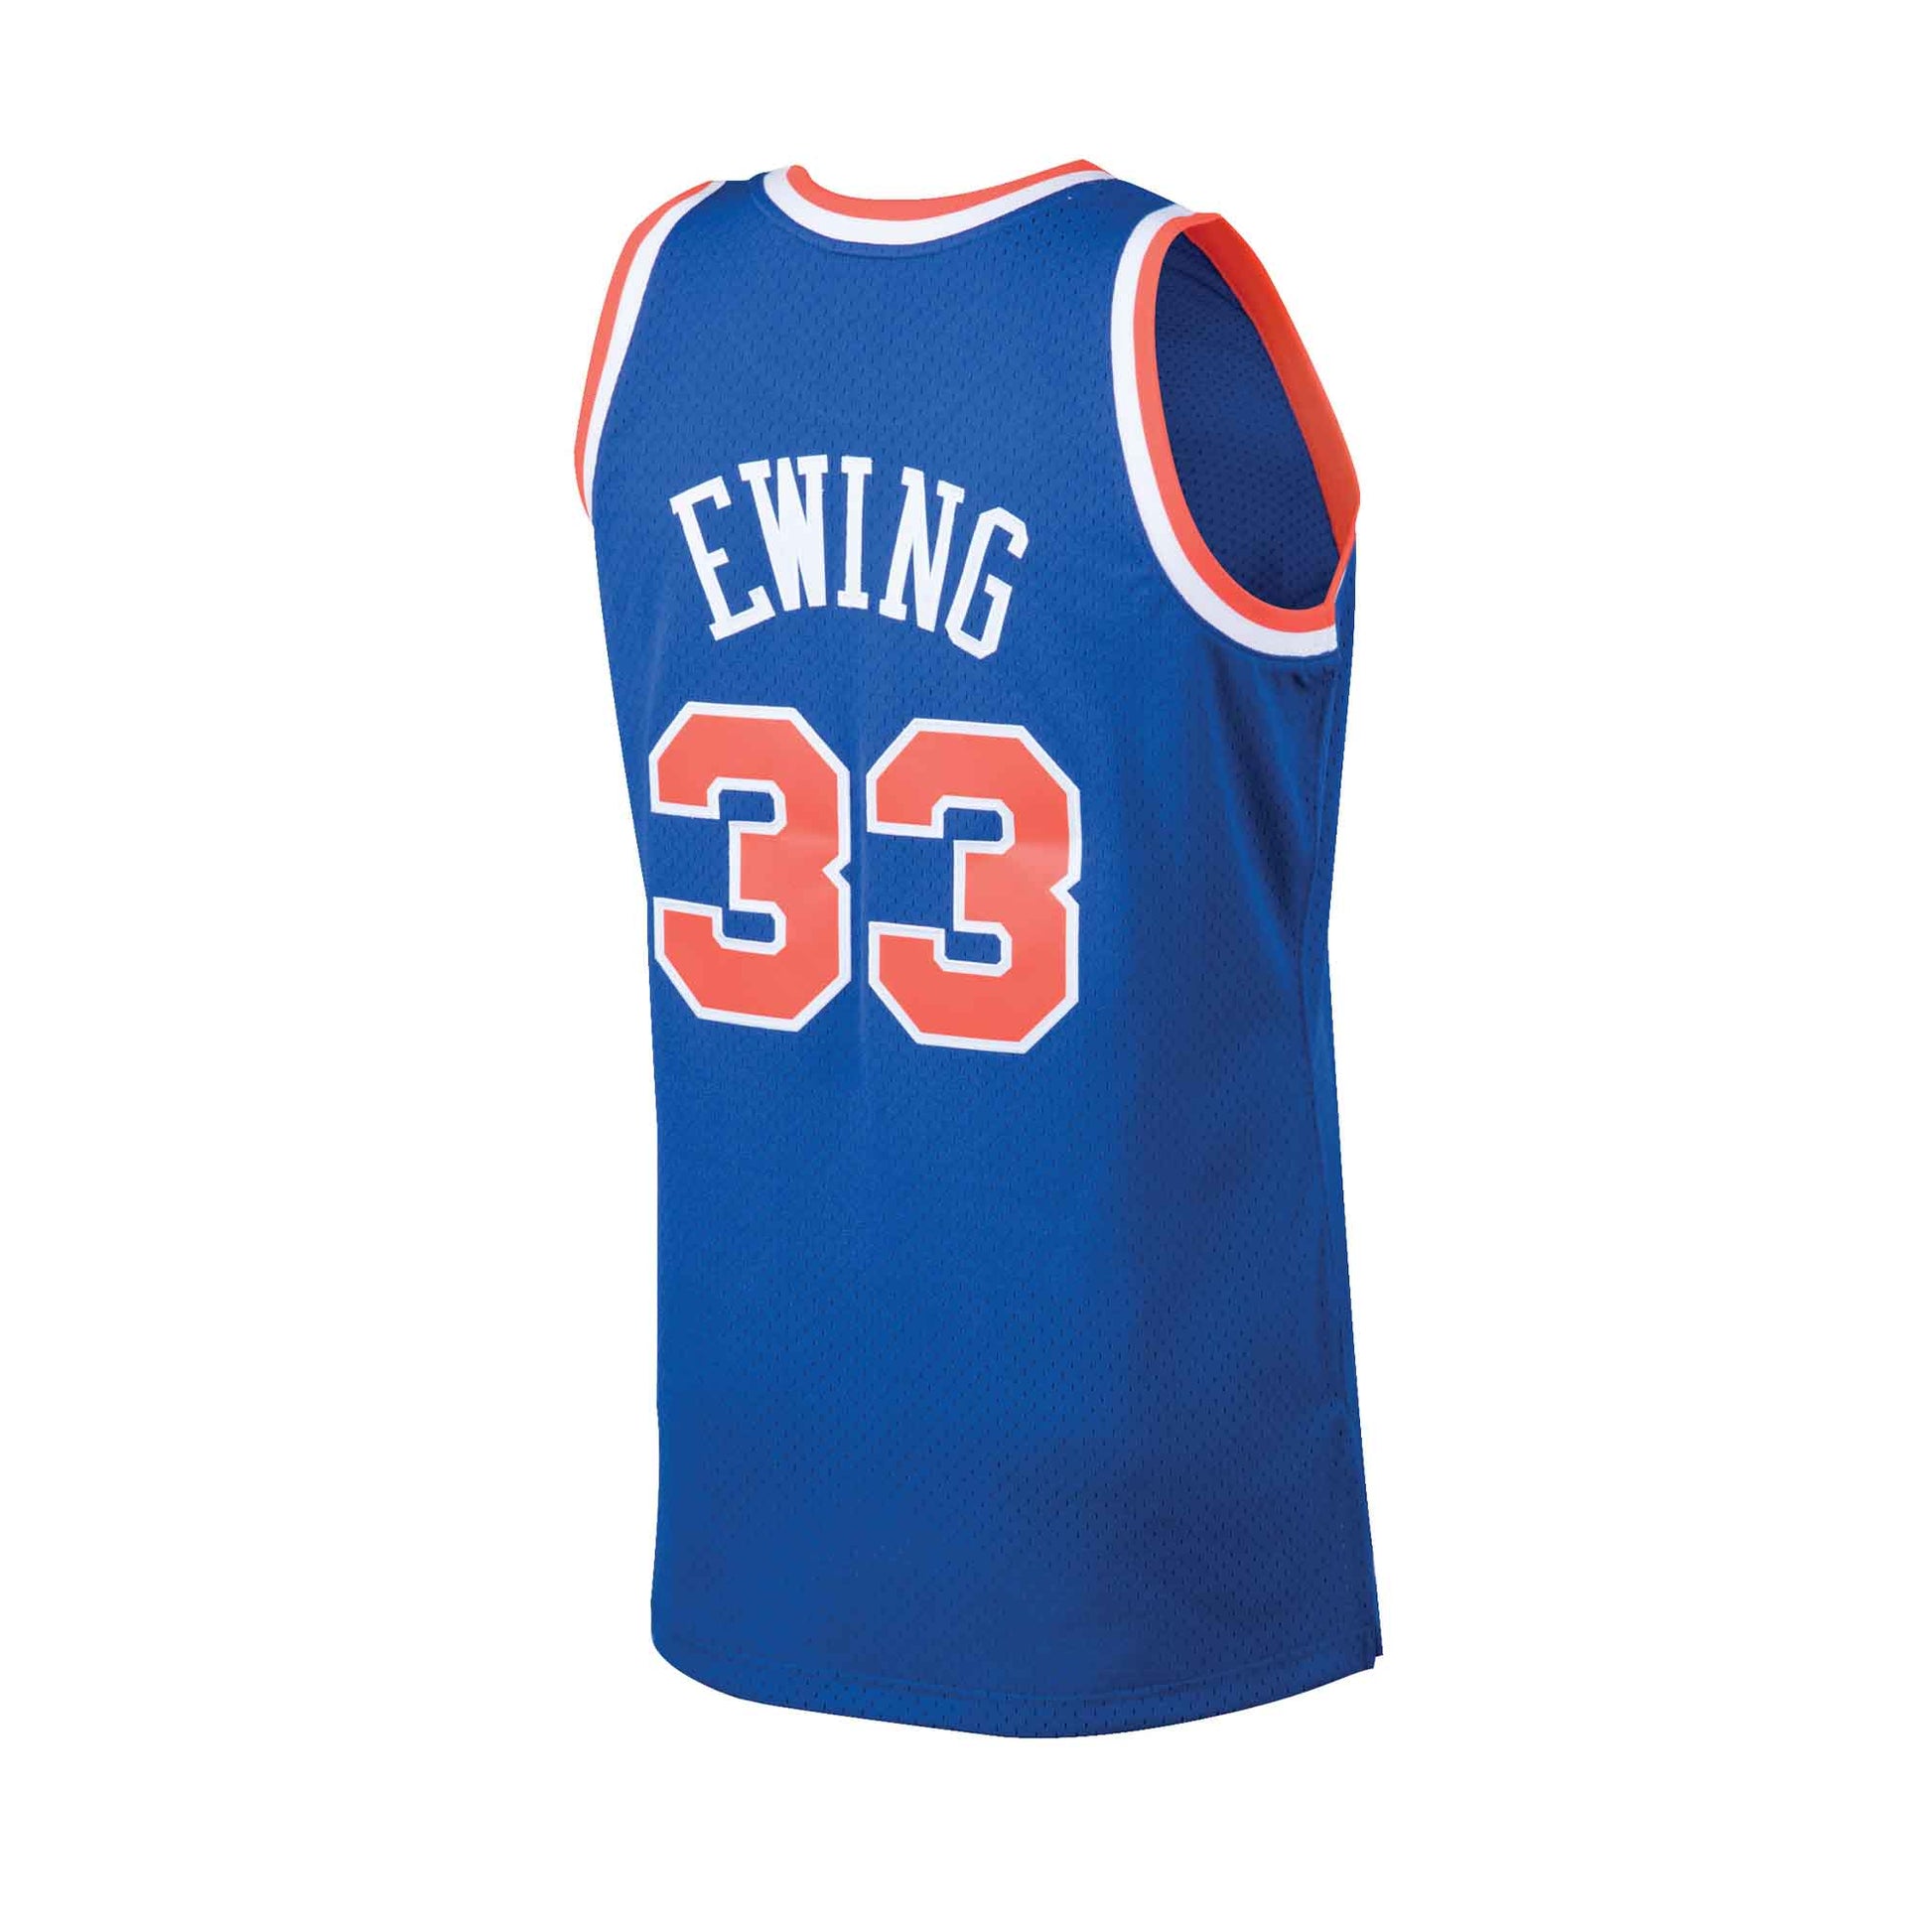 New York Knicks Patrick Ewing #33 Mitchell & Ness Swingman Jersey